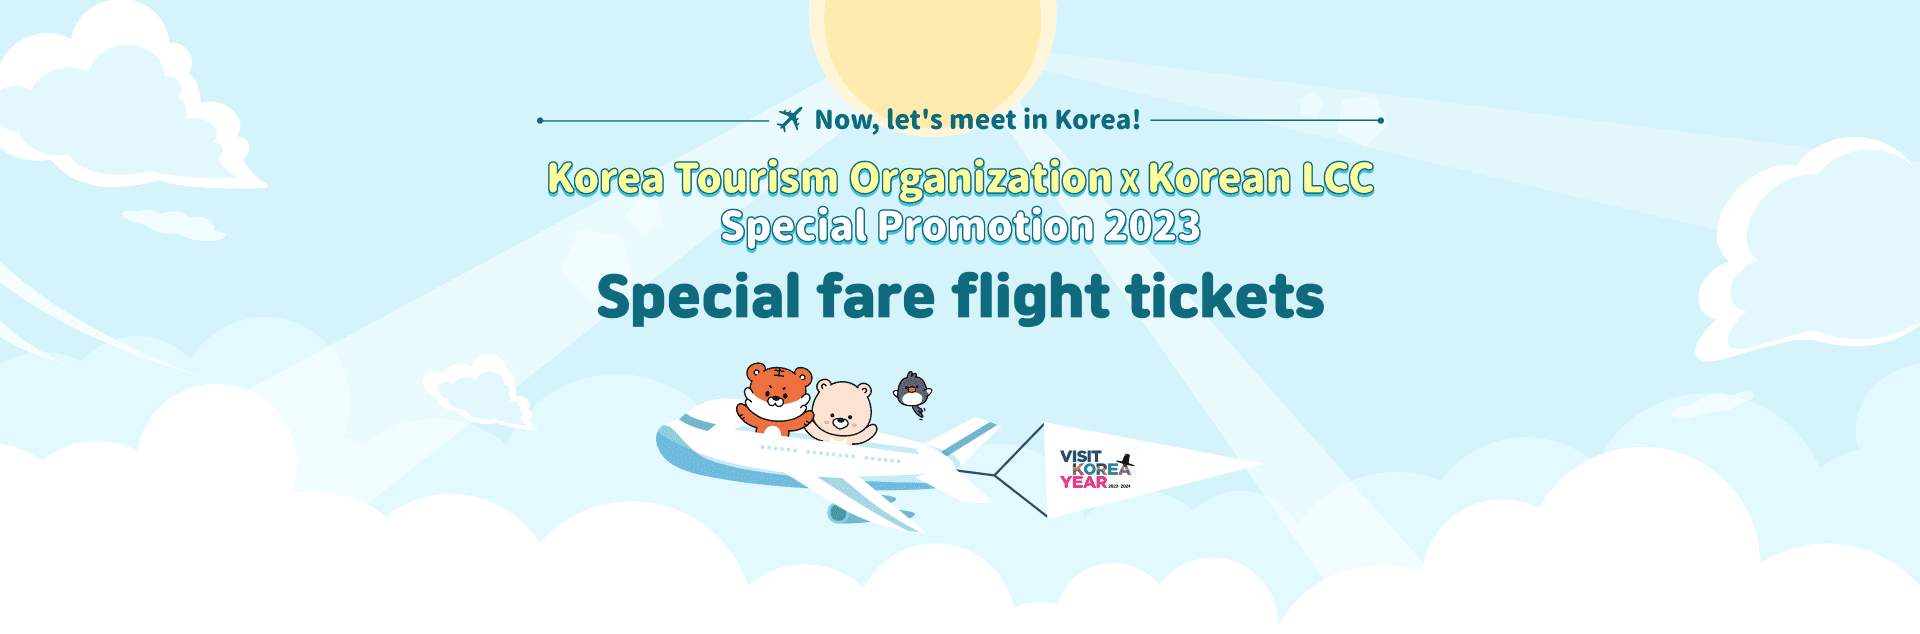 Korea Tourism Organization X Korean LCC Special Promotion 2023